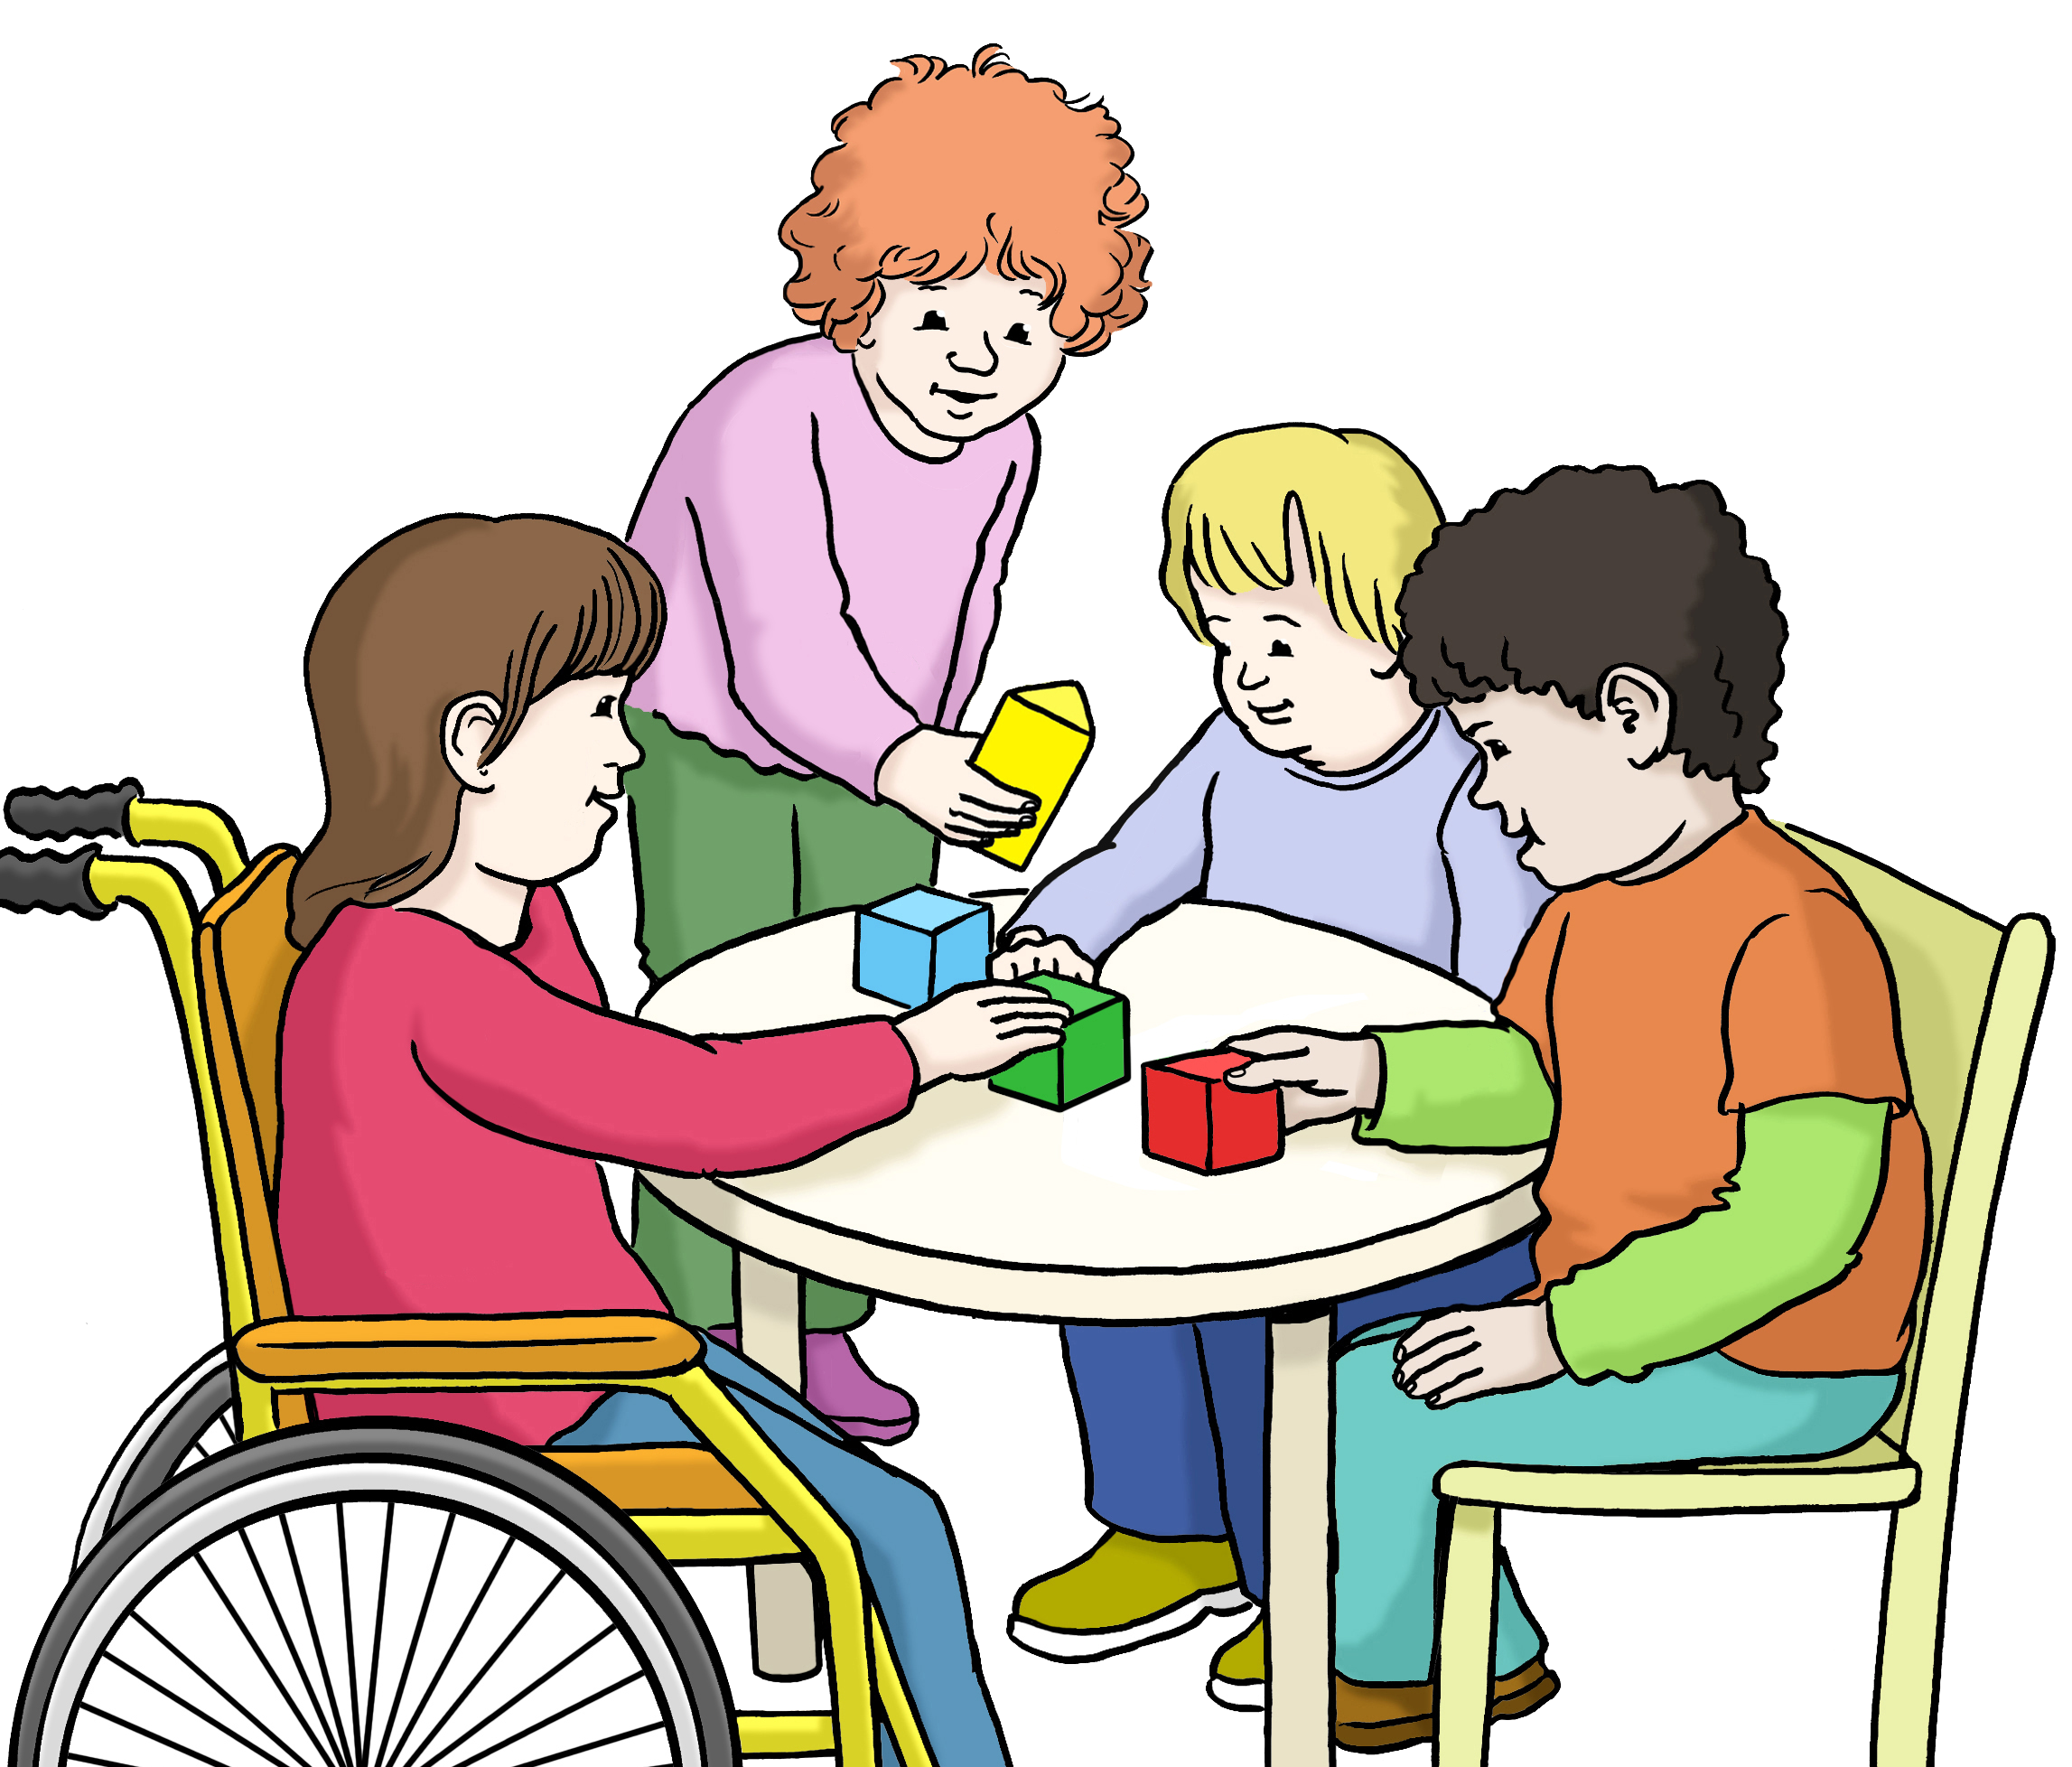 Bildbeschreibung: Drei Kinder sitzen an einem Tisch und spielen mit Bauklötzen. Ein Kind steht dabei und spielt mit.